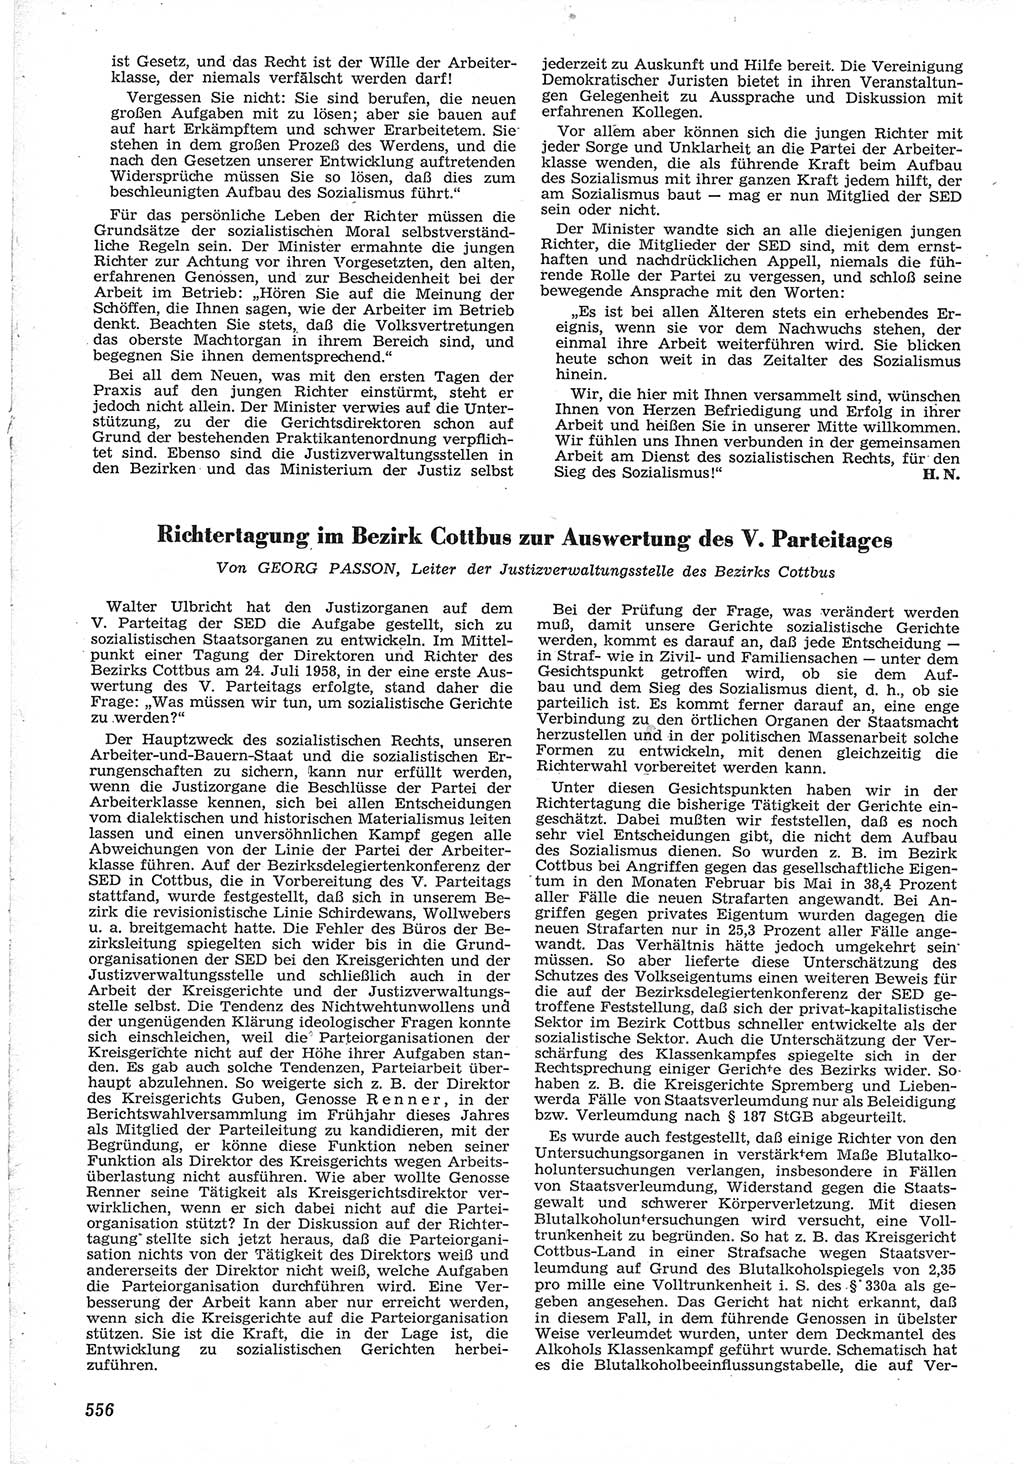 Neue Justiz (NJ), Zeitschrift für Recht und Rechtswissenschaft [Deutsche Demokratische Republik (DDR)], 12. Jahrgang 1958, Seite 556 (NJ DDR 1958, S. 556)